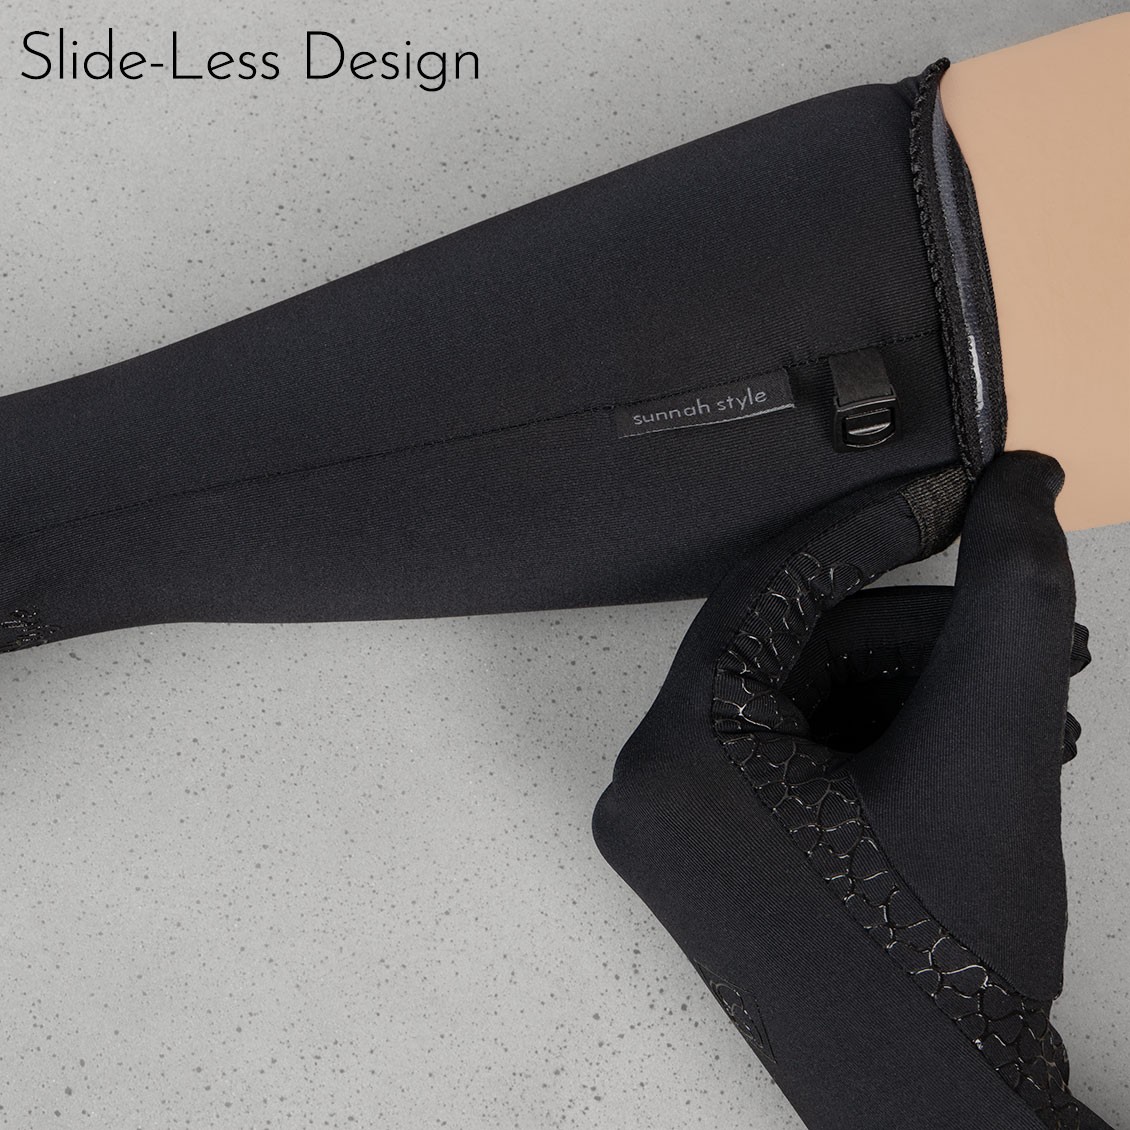 Sunnah Style Esteem Signature Gloves v2 Forearm Length Slide-Less Design